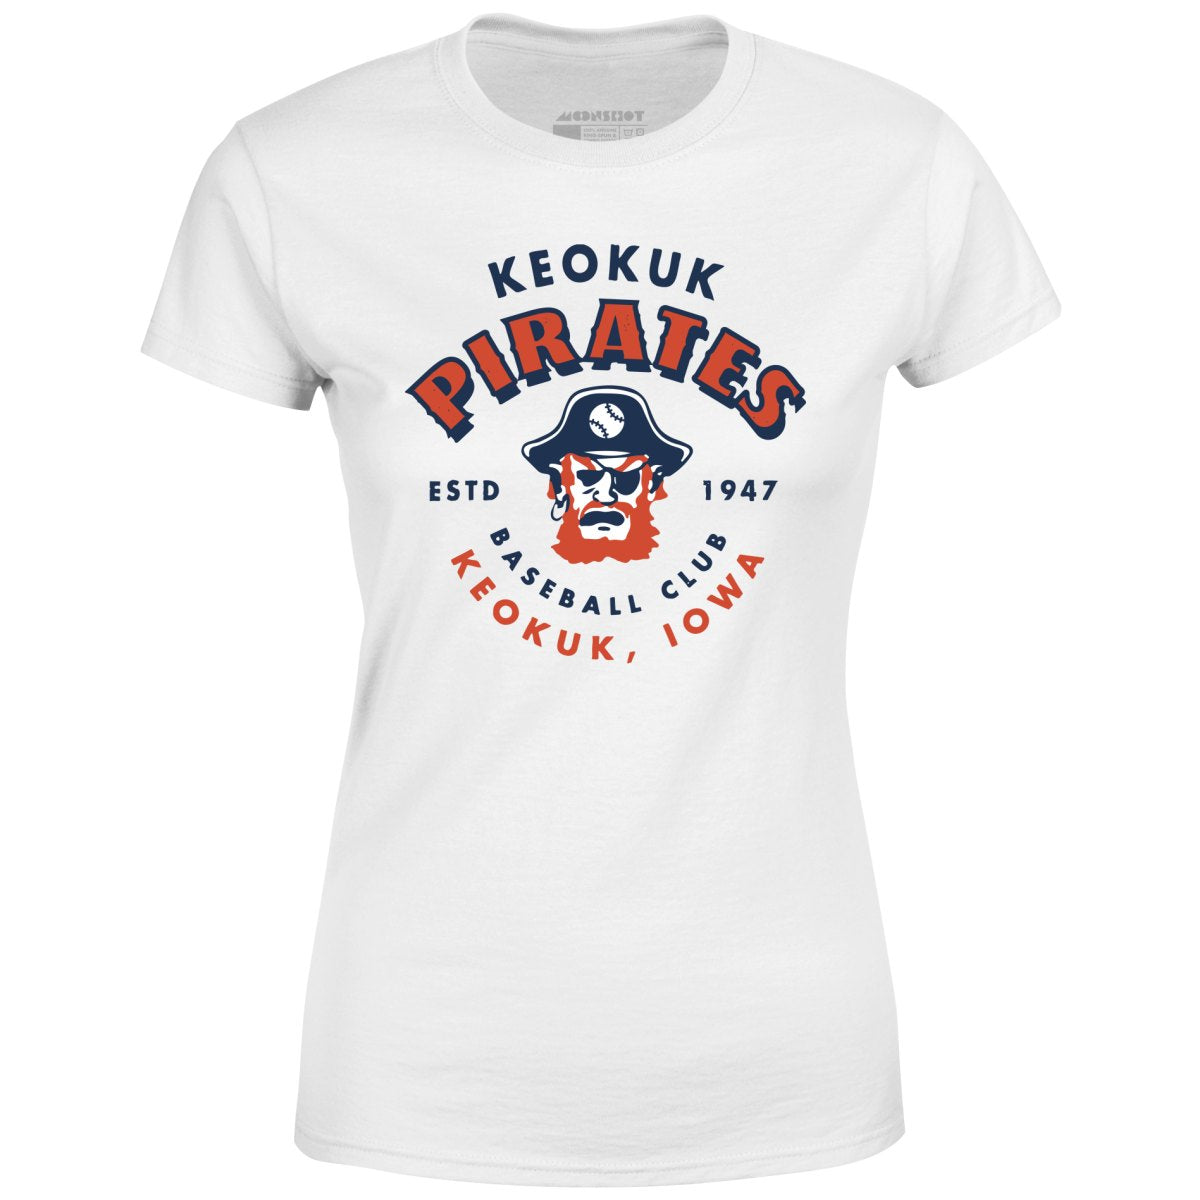 Keokuk Pirates - Iowa - Vintage Defunct Baseball Teams - Women's T-Shirt